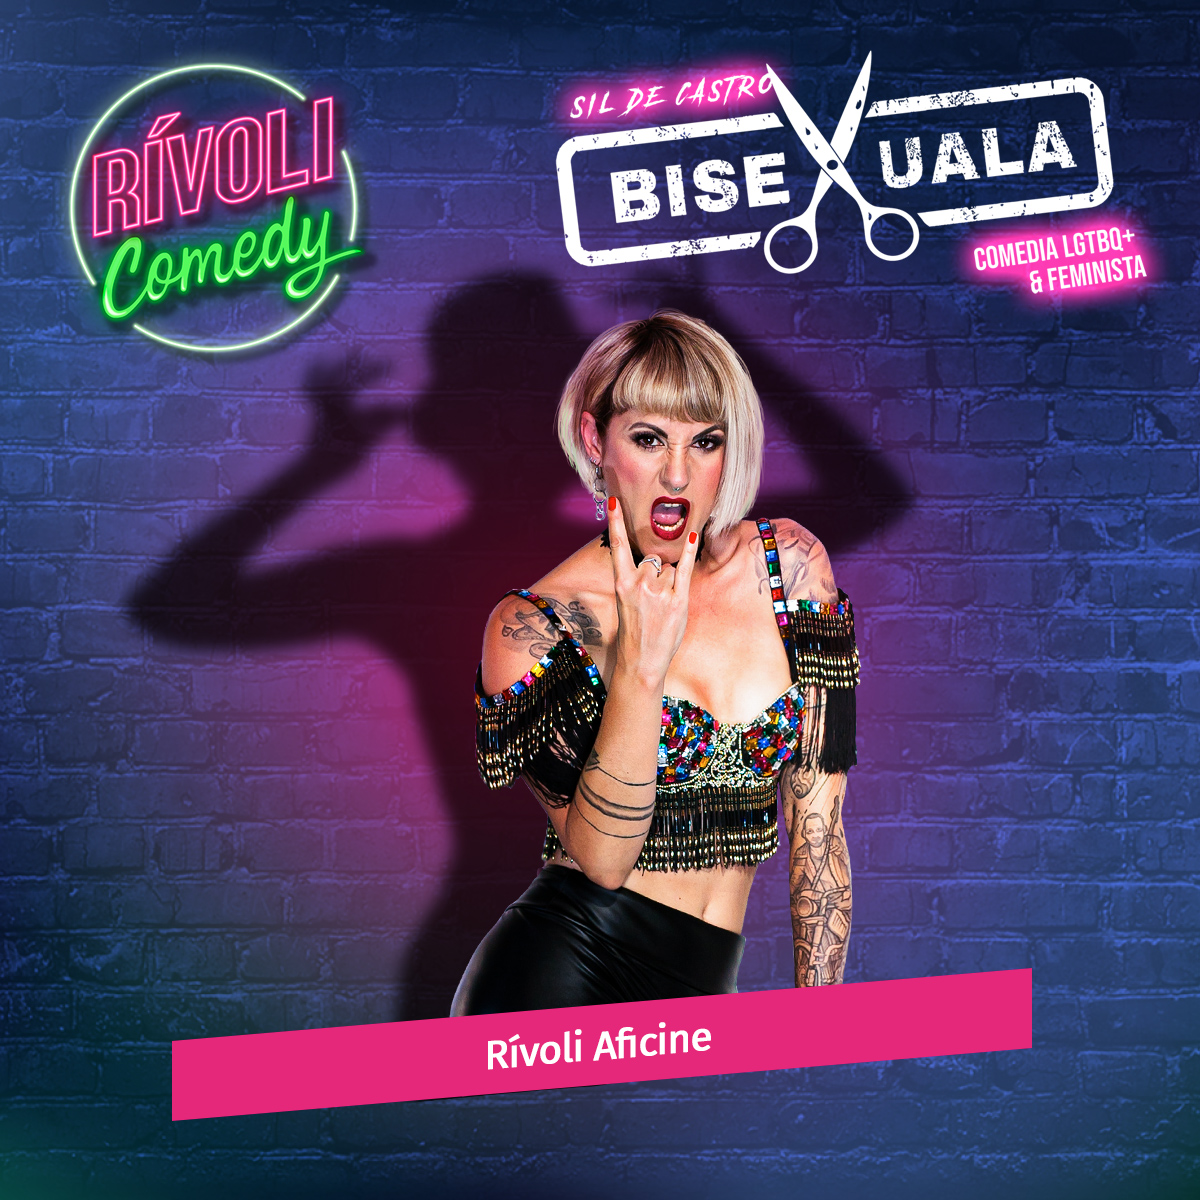 Sil de Castro | Bisexuala · 28 de febrero · Palma de Mallorca (Rívoli Comedy)